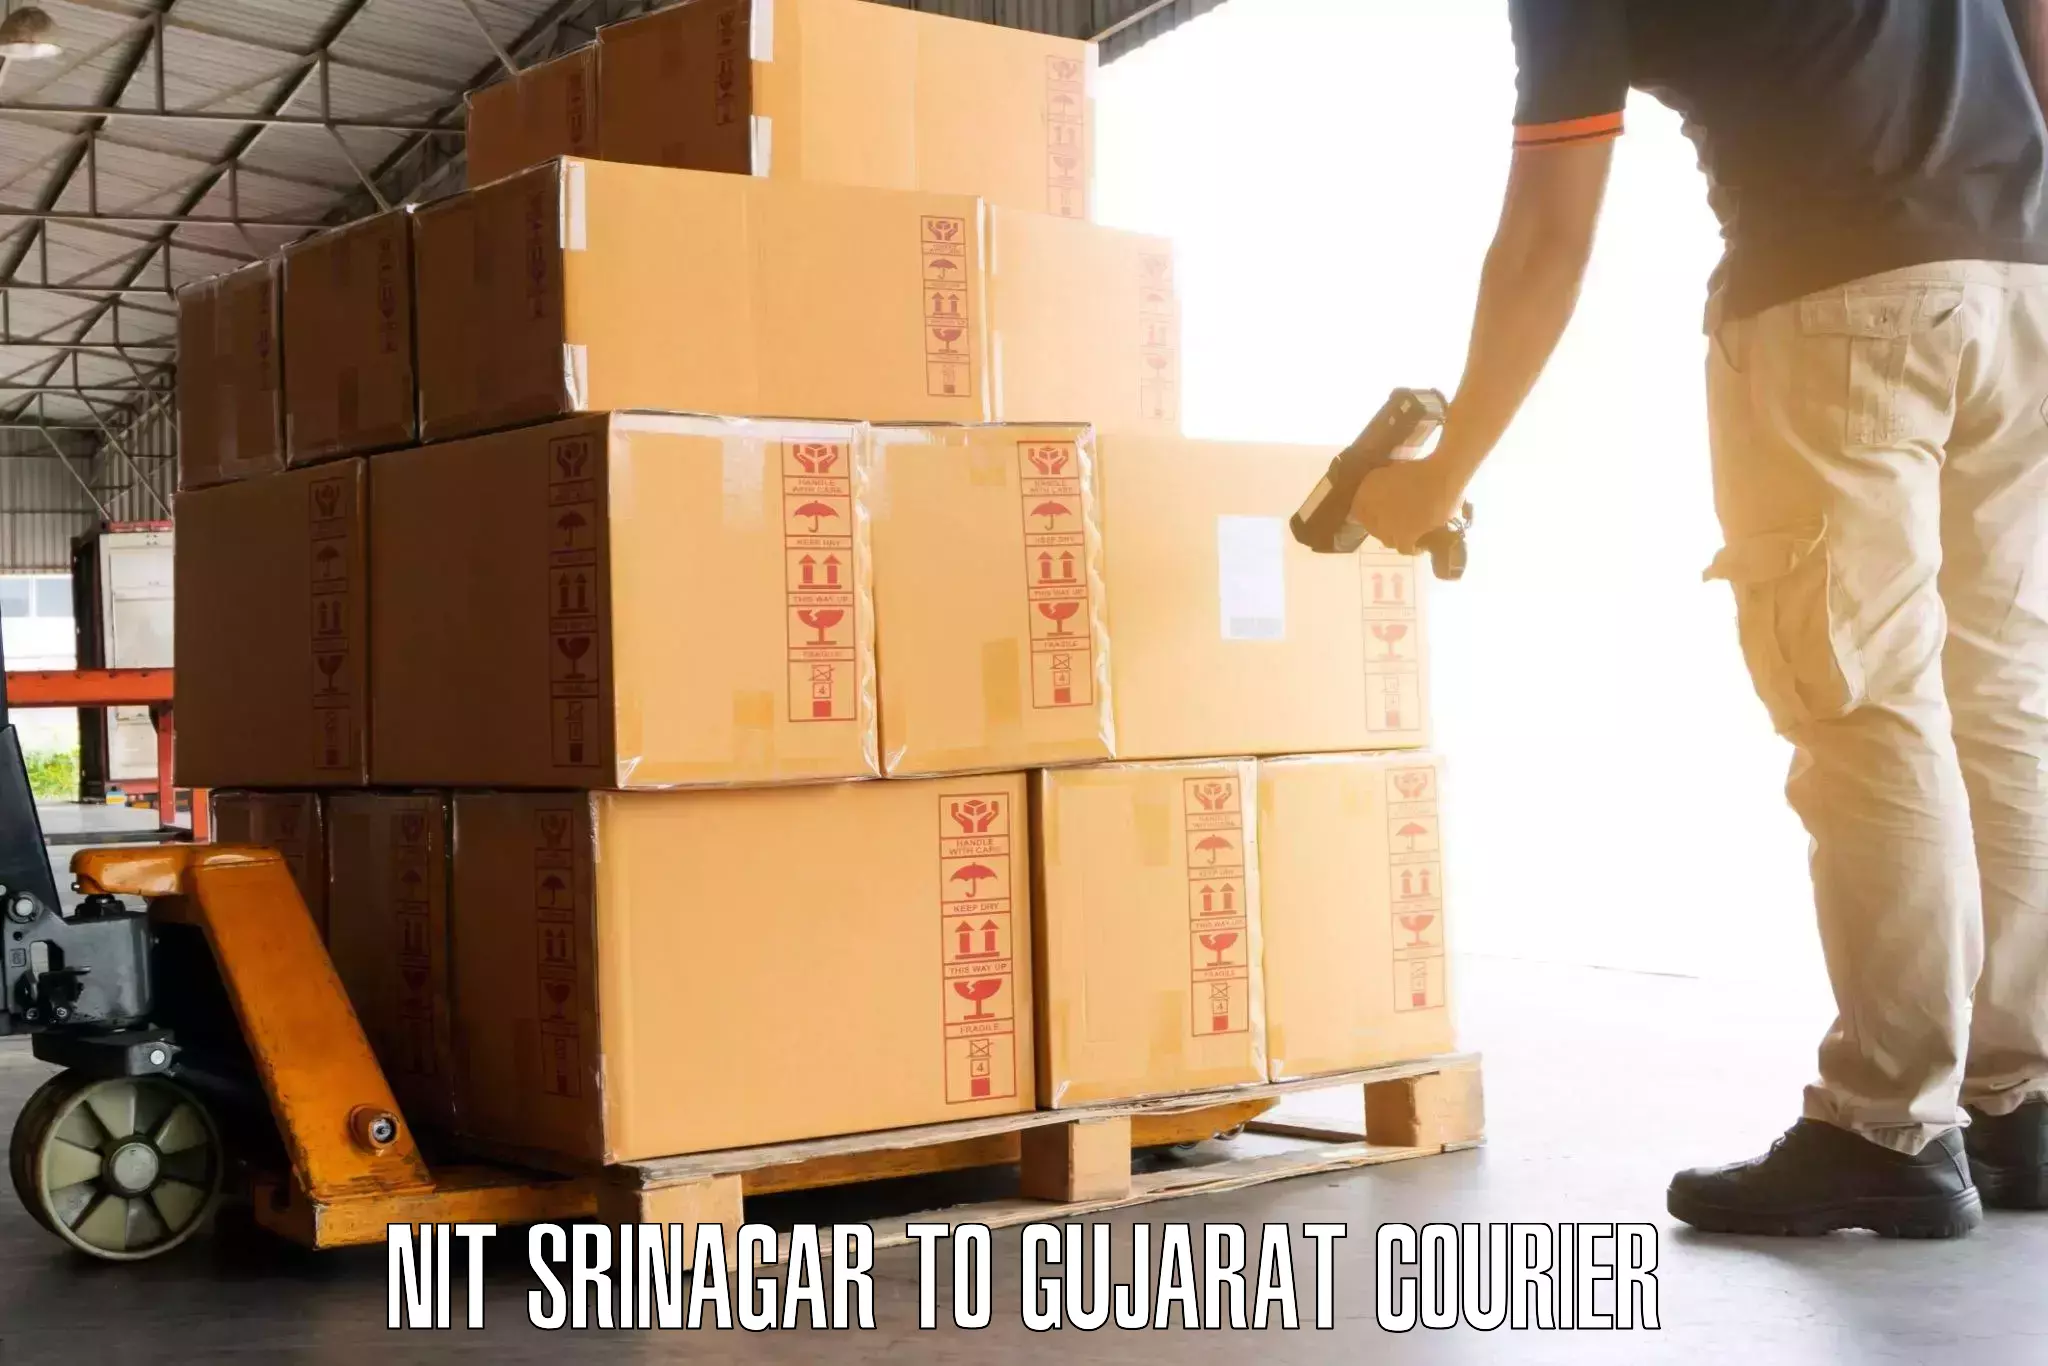 Luggage transfer service NIT Srinagar to Gujarat